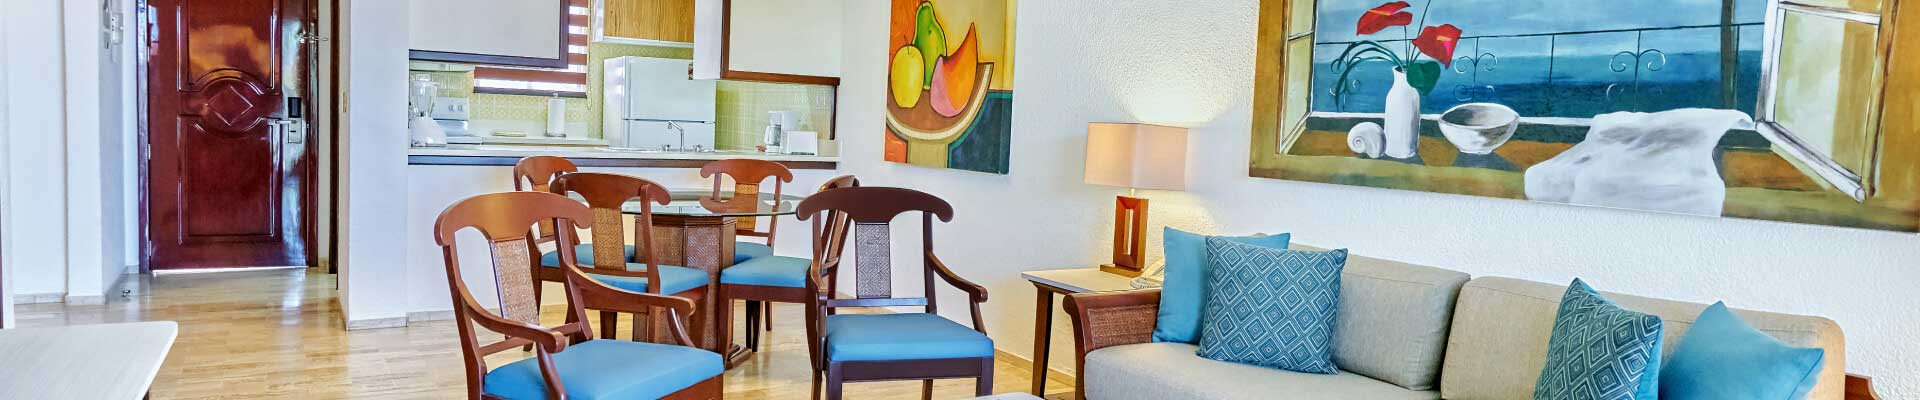 Especial de hospedaje en villa Familiar en Cancún y Riviera Maya